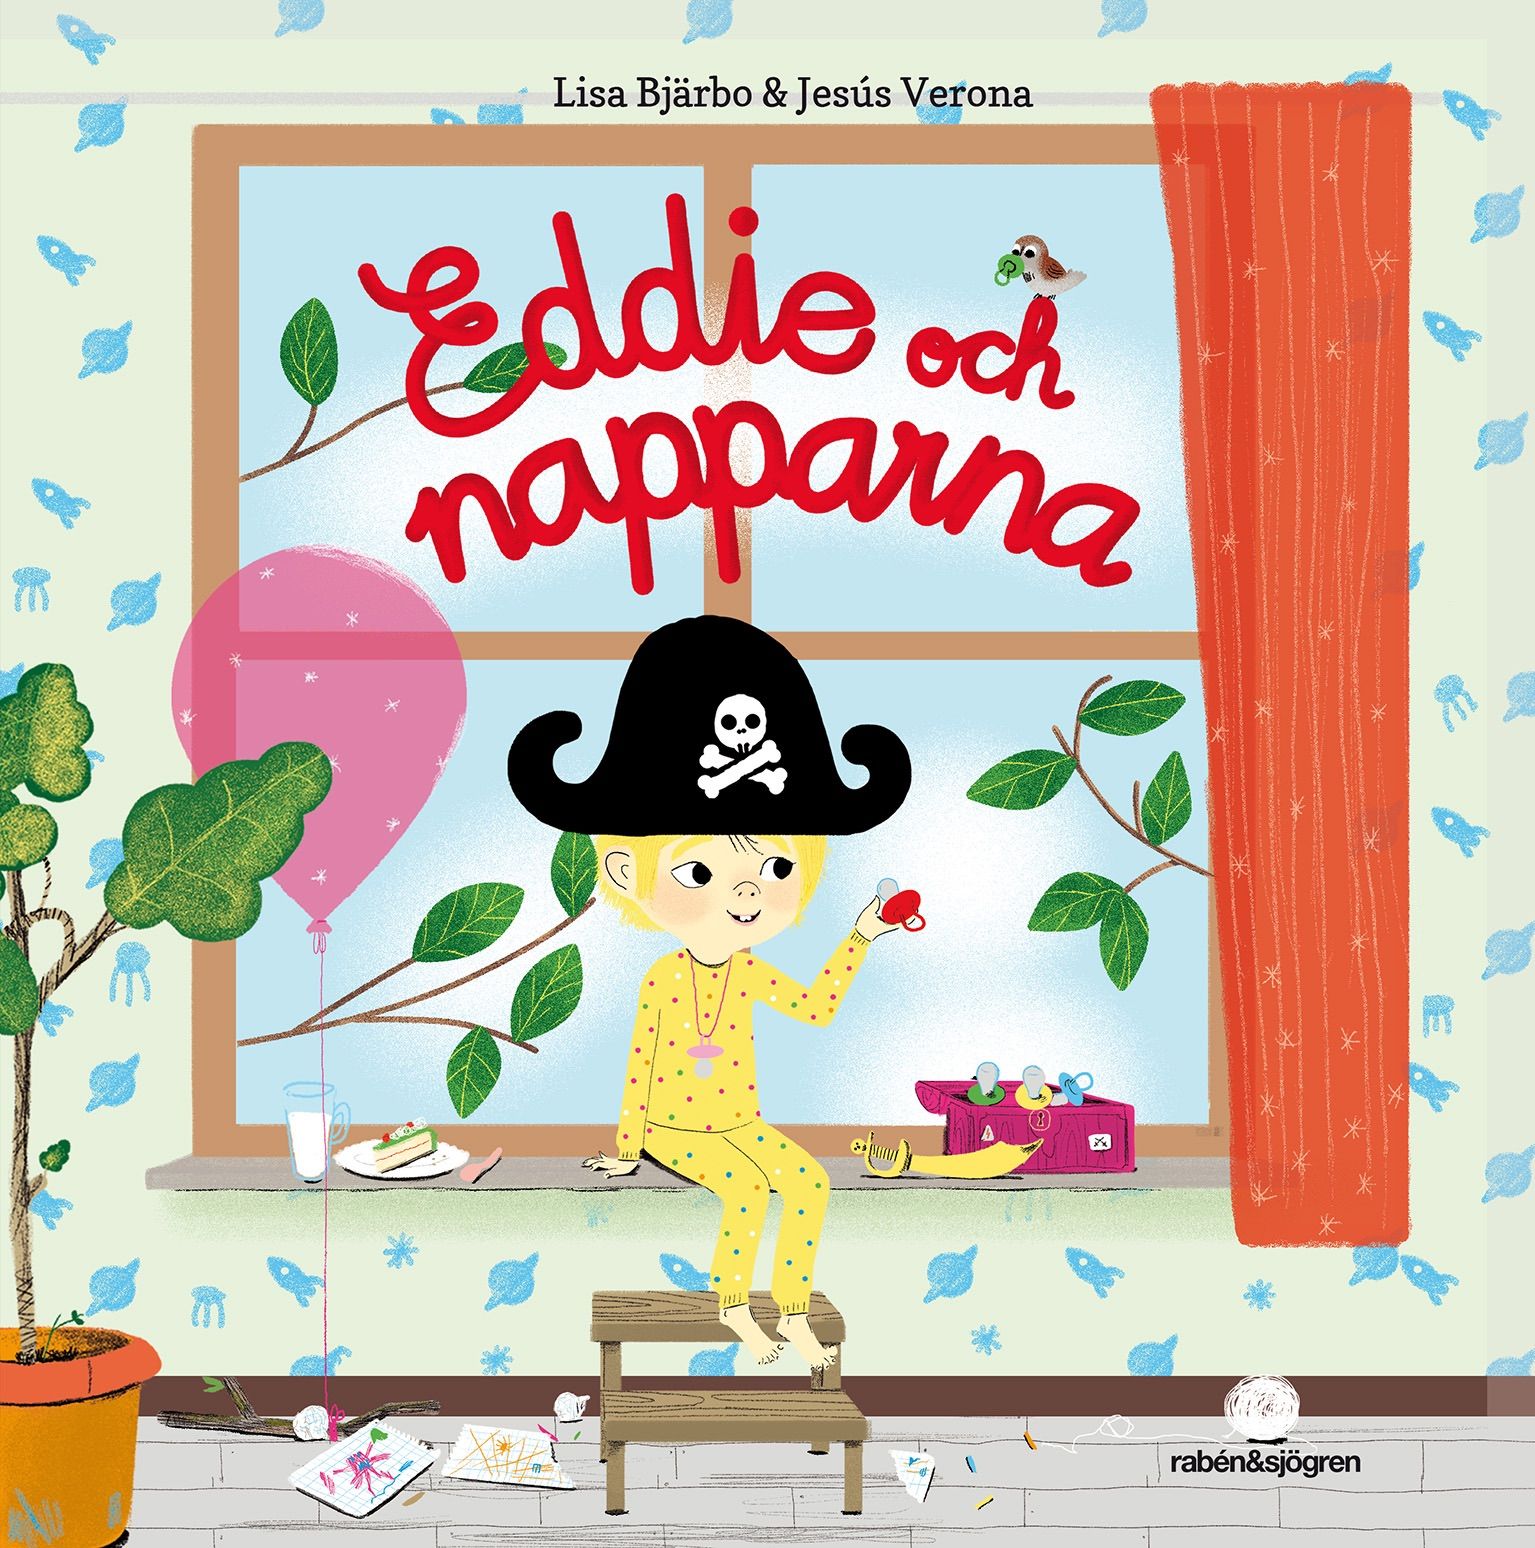 Eddie och napparna, audiobook by Lisa Bjärbo